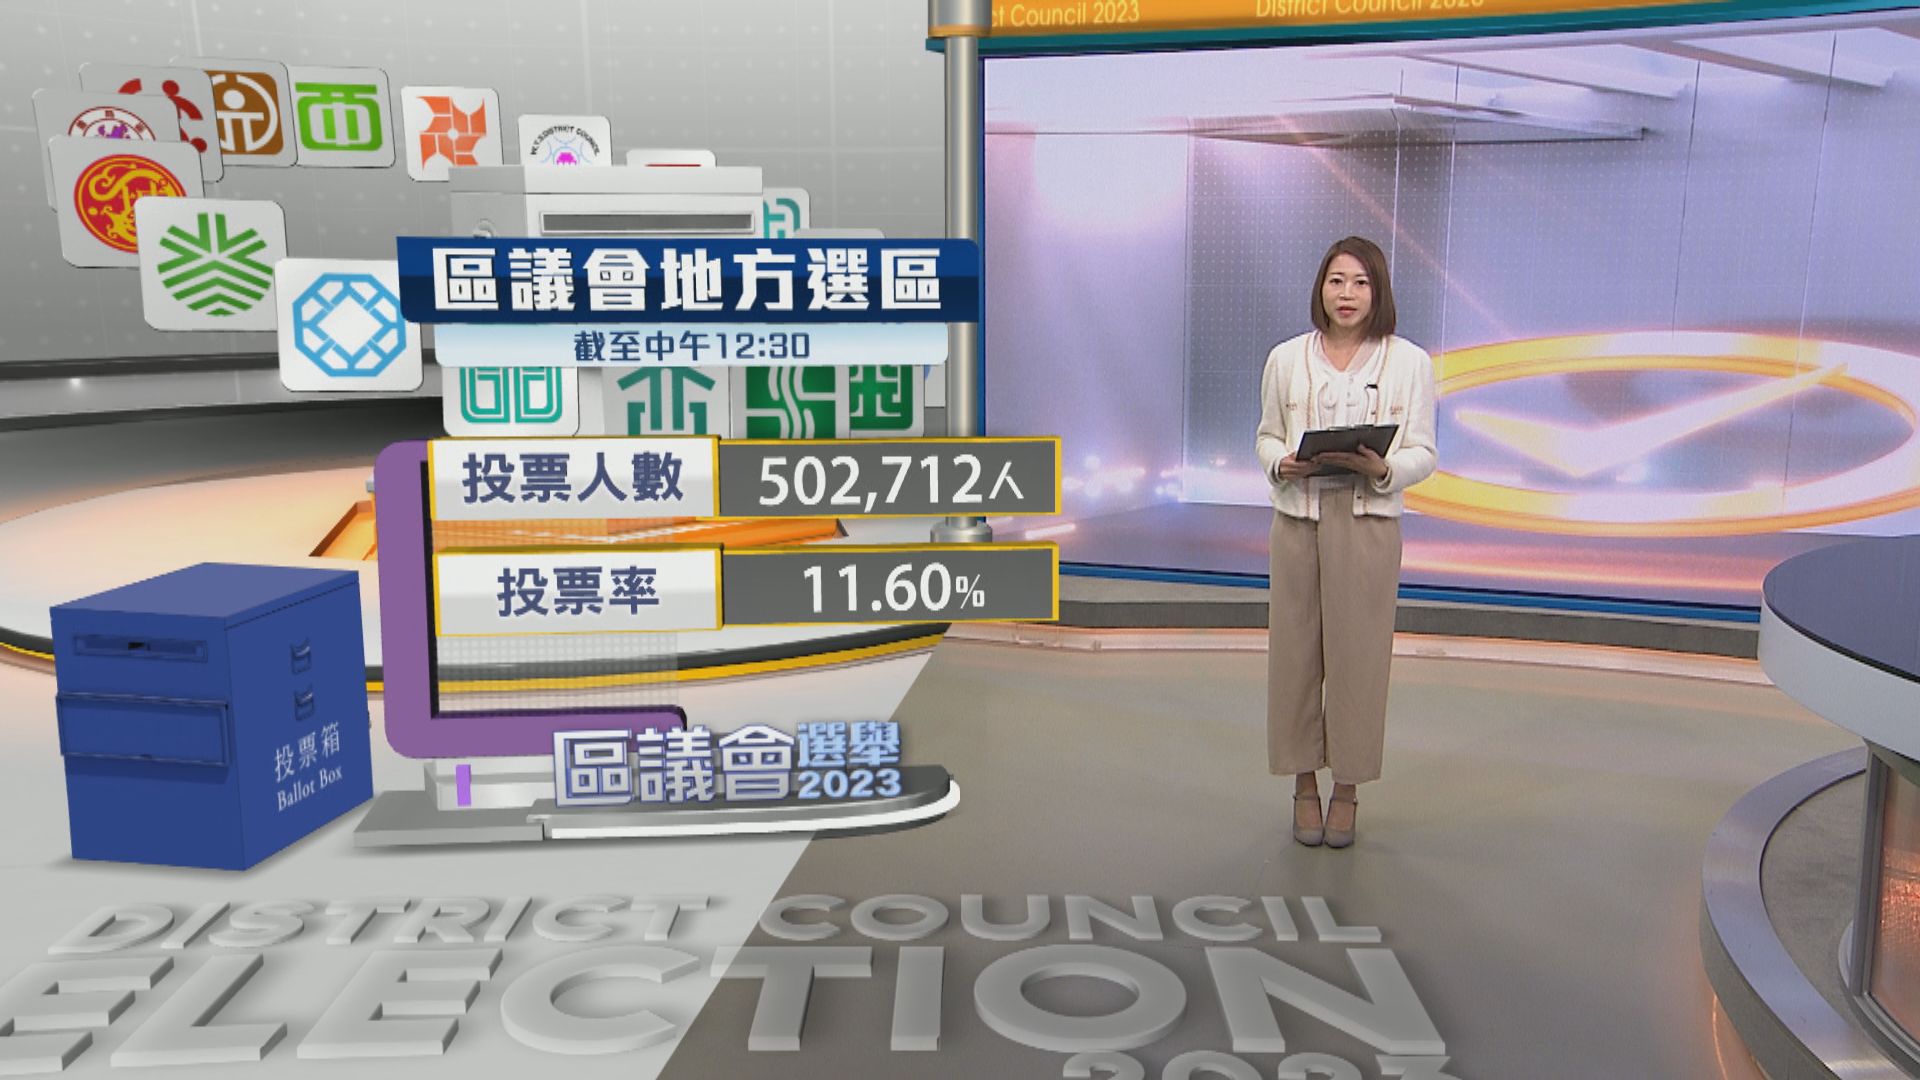 【區議會選舉】截至中午12時半有逾50萬人投票 投票率為11.6%